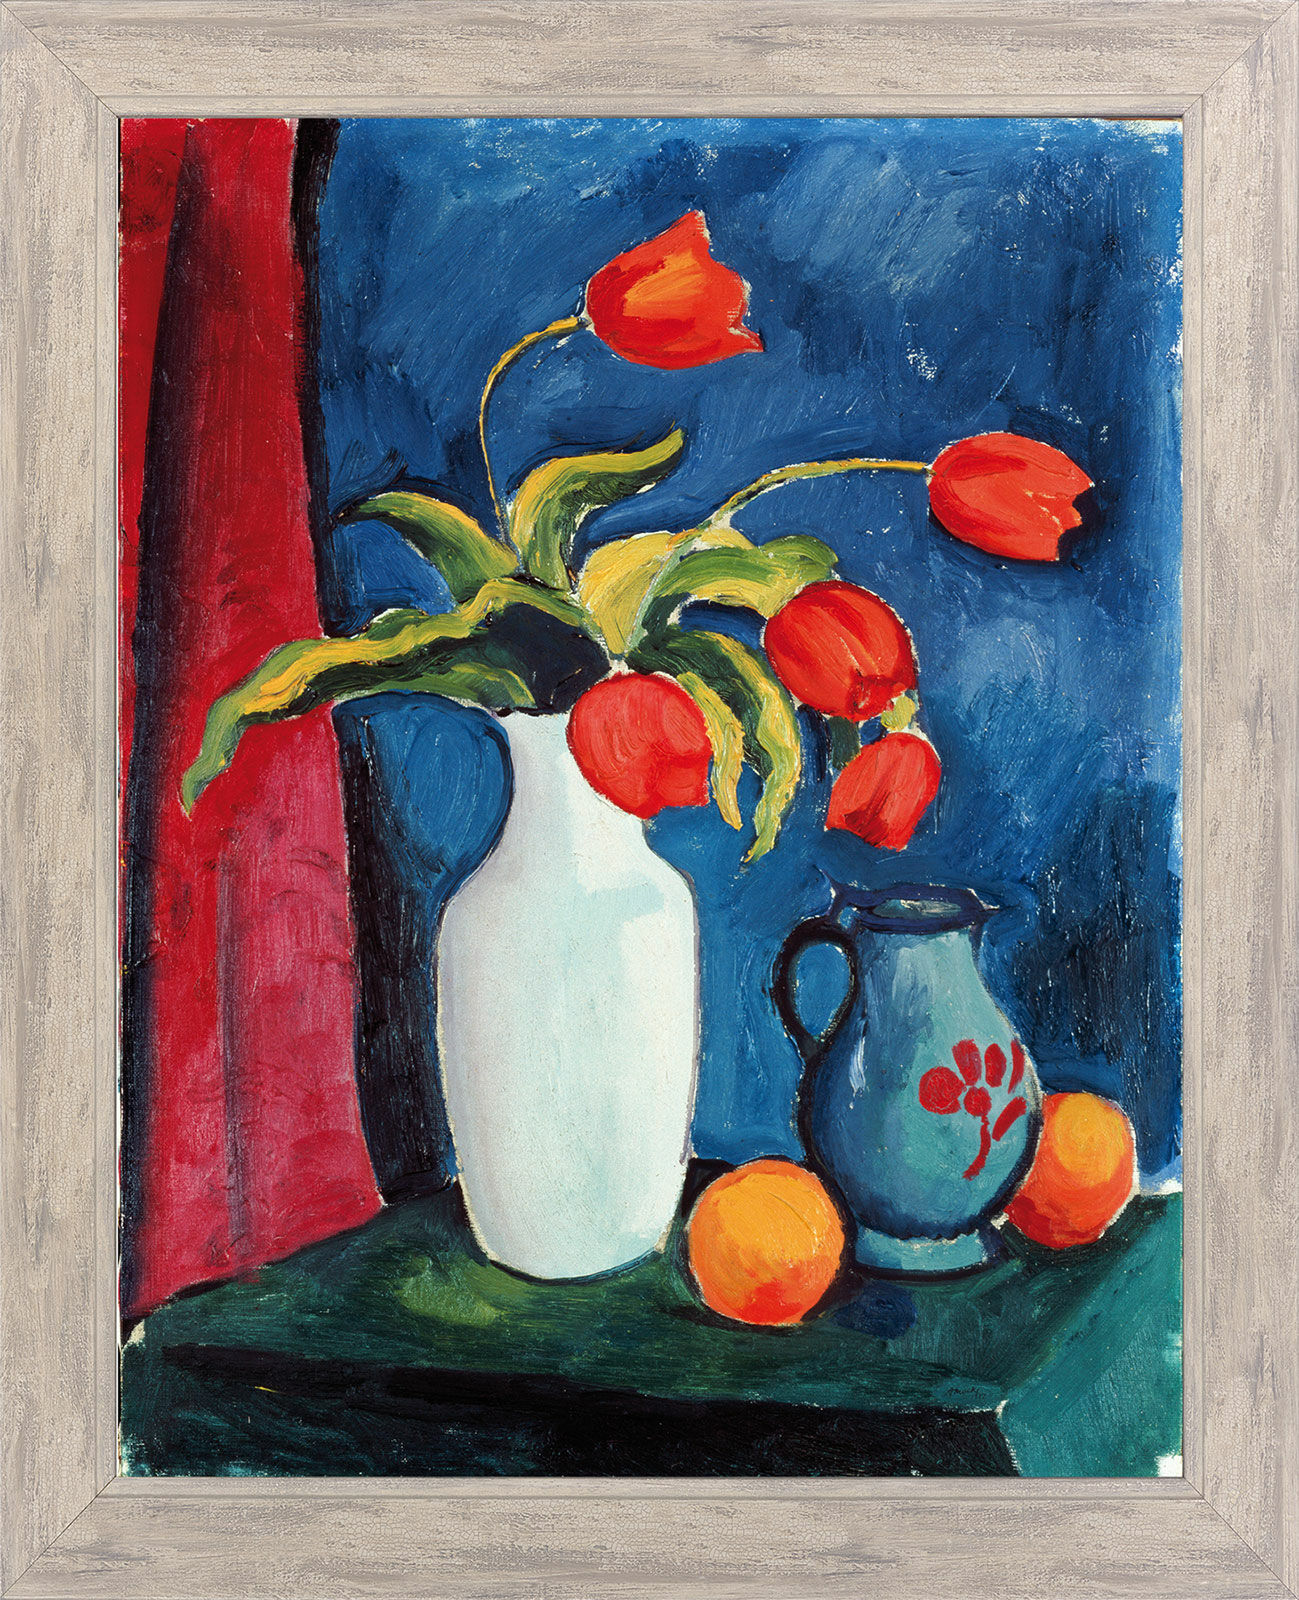 Billede "Røde tulipaner i en hvid vase" (1912), indrammet von August Macke